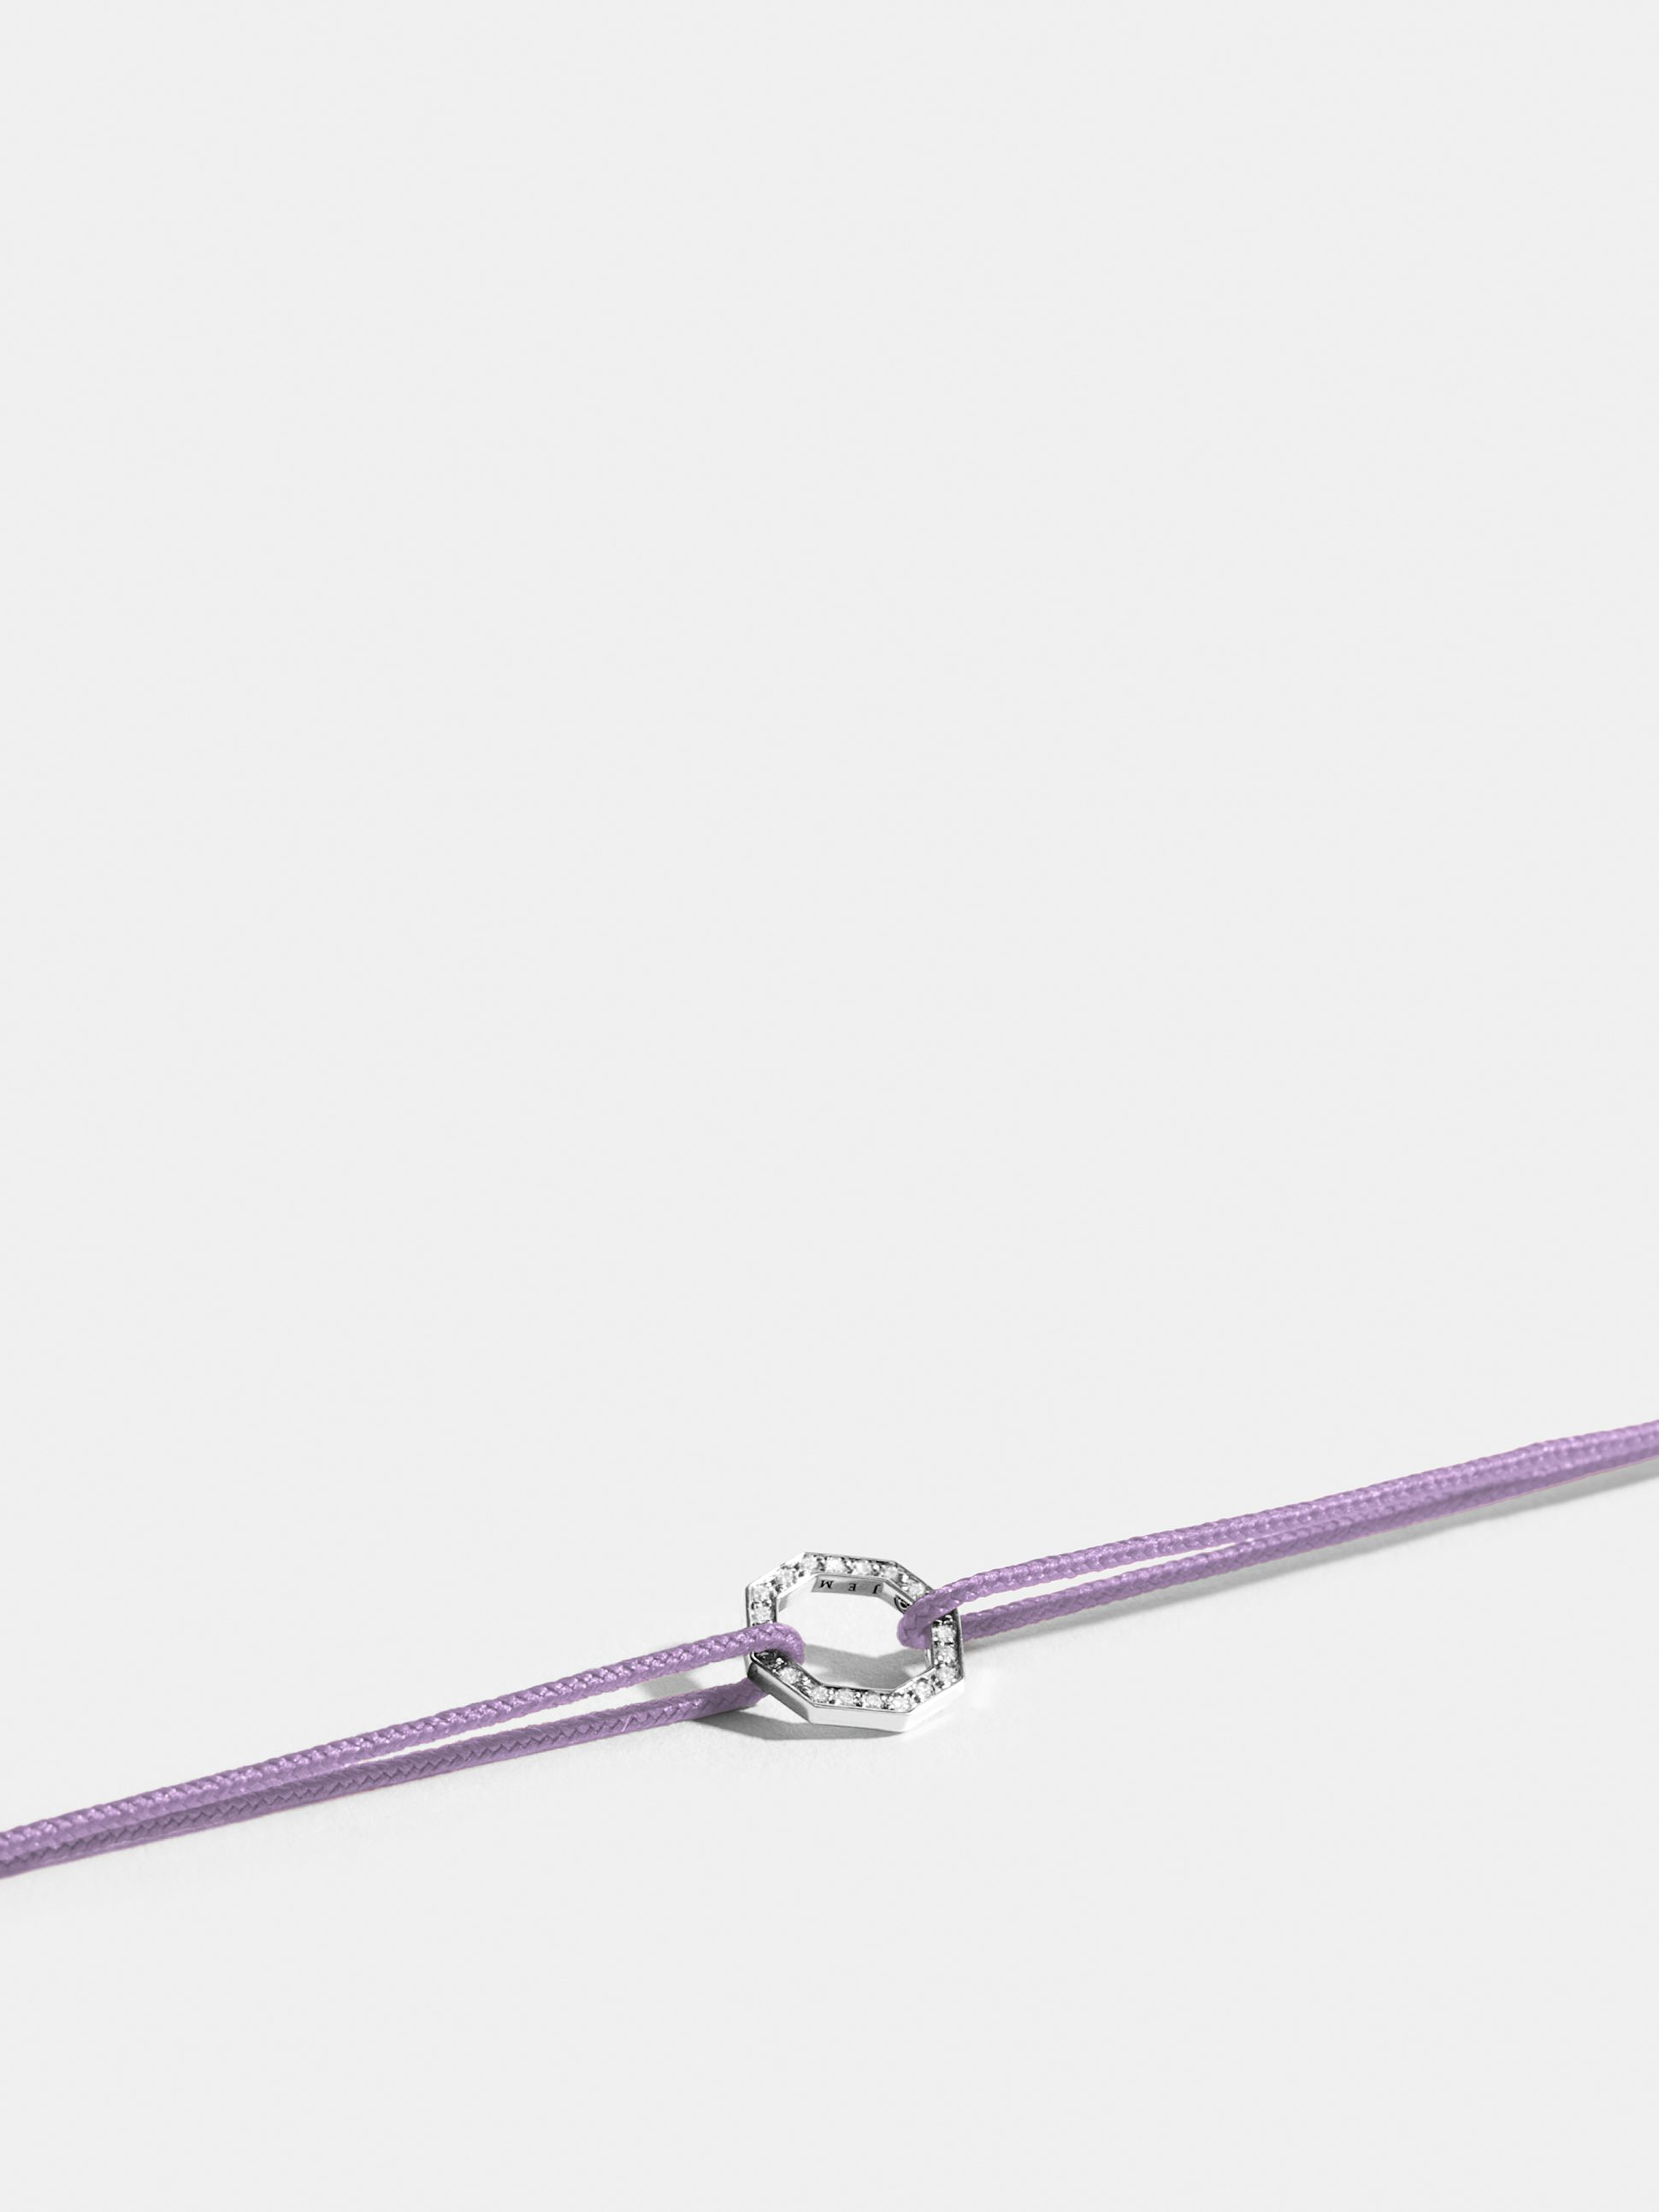 Motif Octogone en Or blanc éthique 18 carats certifié Fairmined et pavé de diamants de synthèse, sur cordon violet lilas.